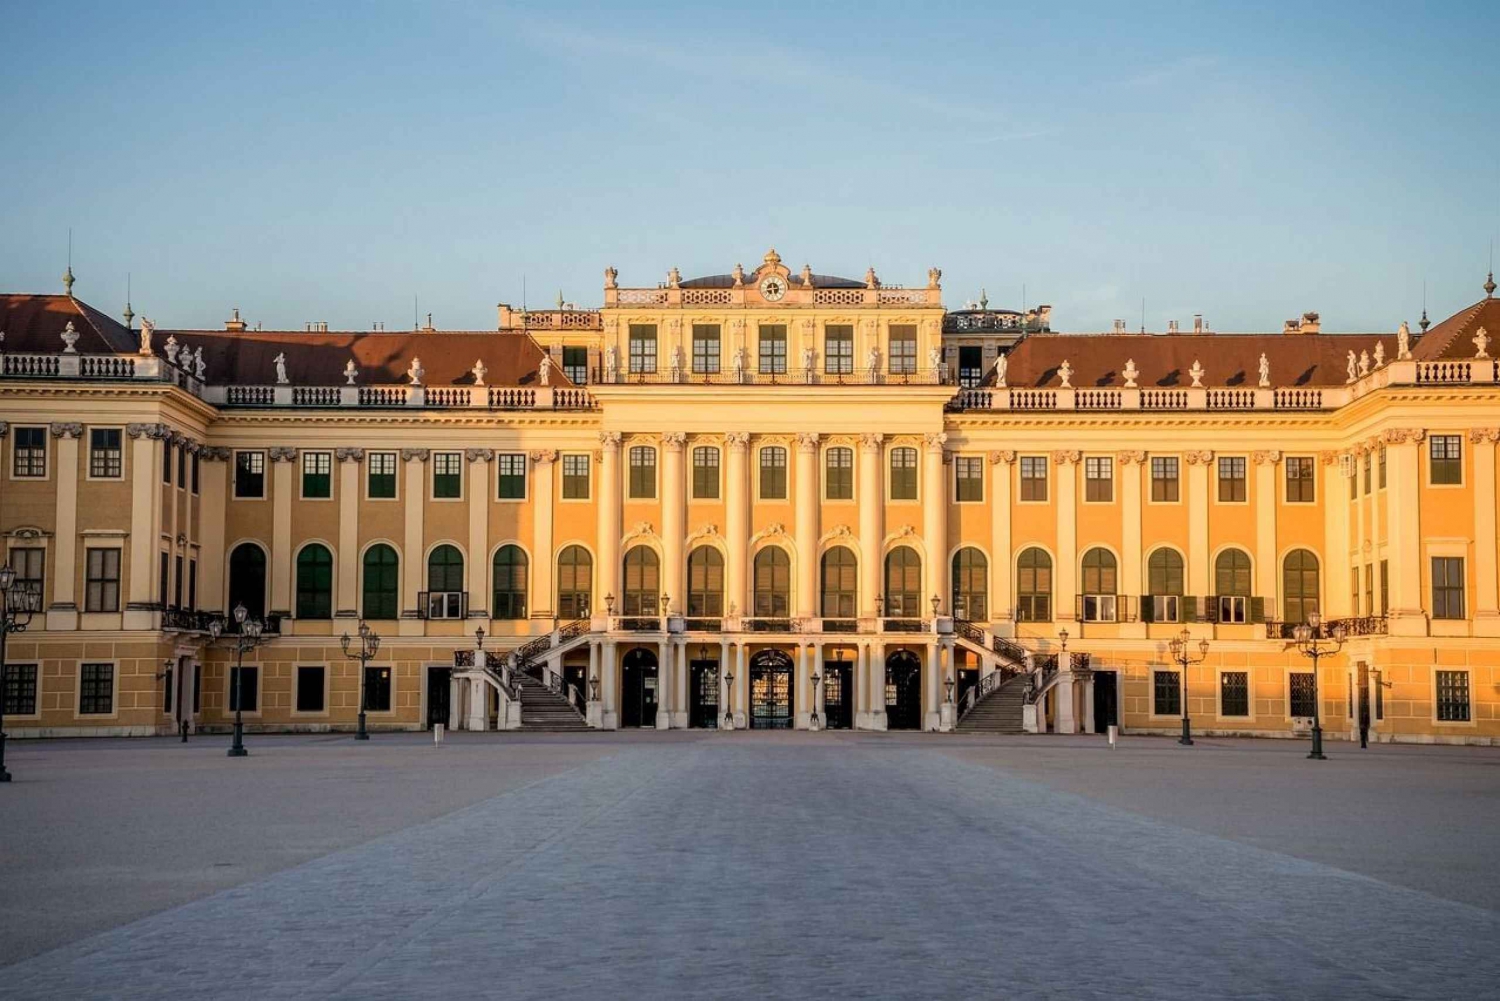 Privat omvisning på Schönbrunn slott: Inngang inkludert